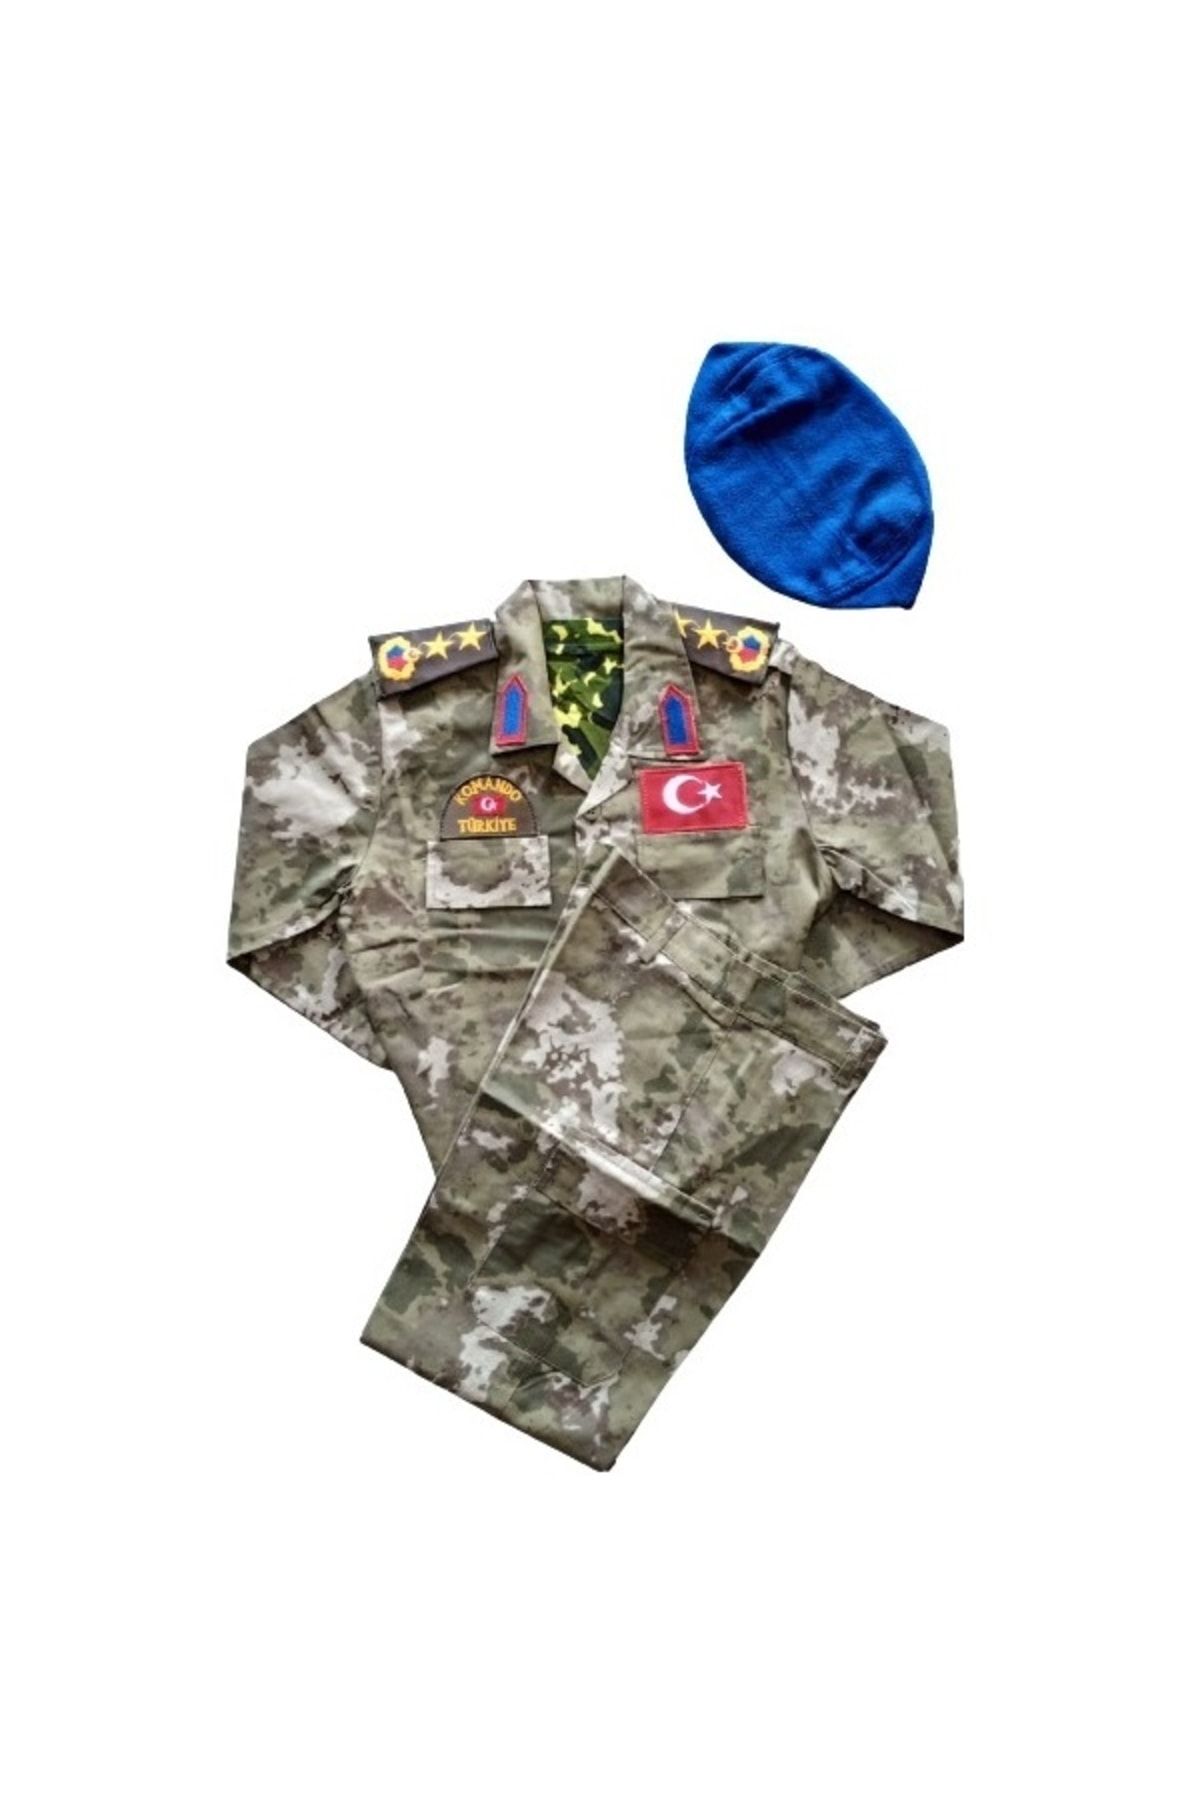 Temiz Pazar Erkek Çocuk Asker Komando Kıyafeti Kostüm Mavi Bereli